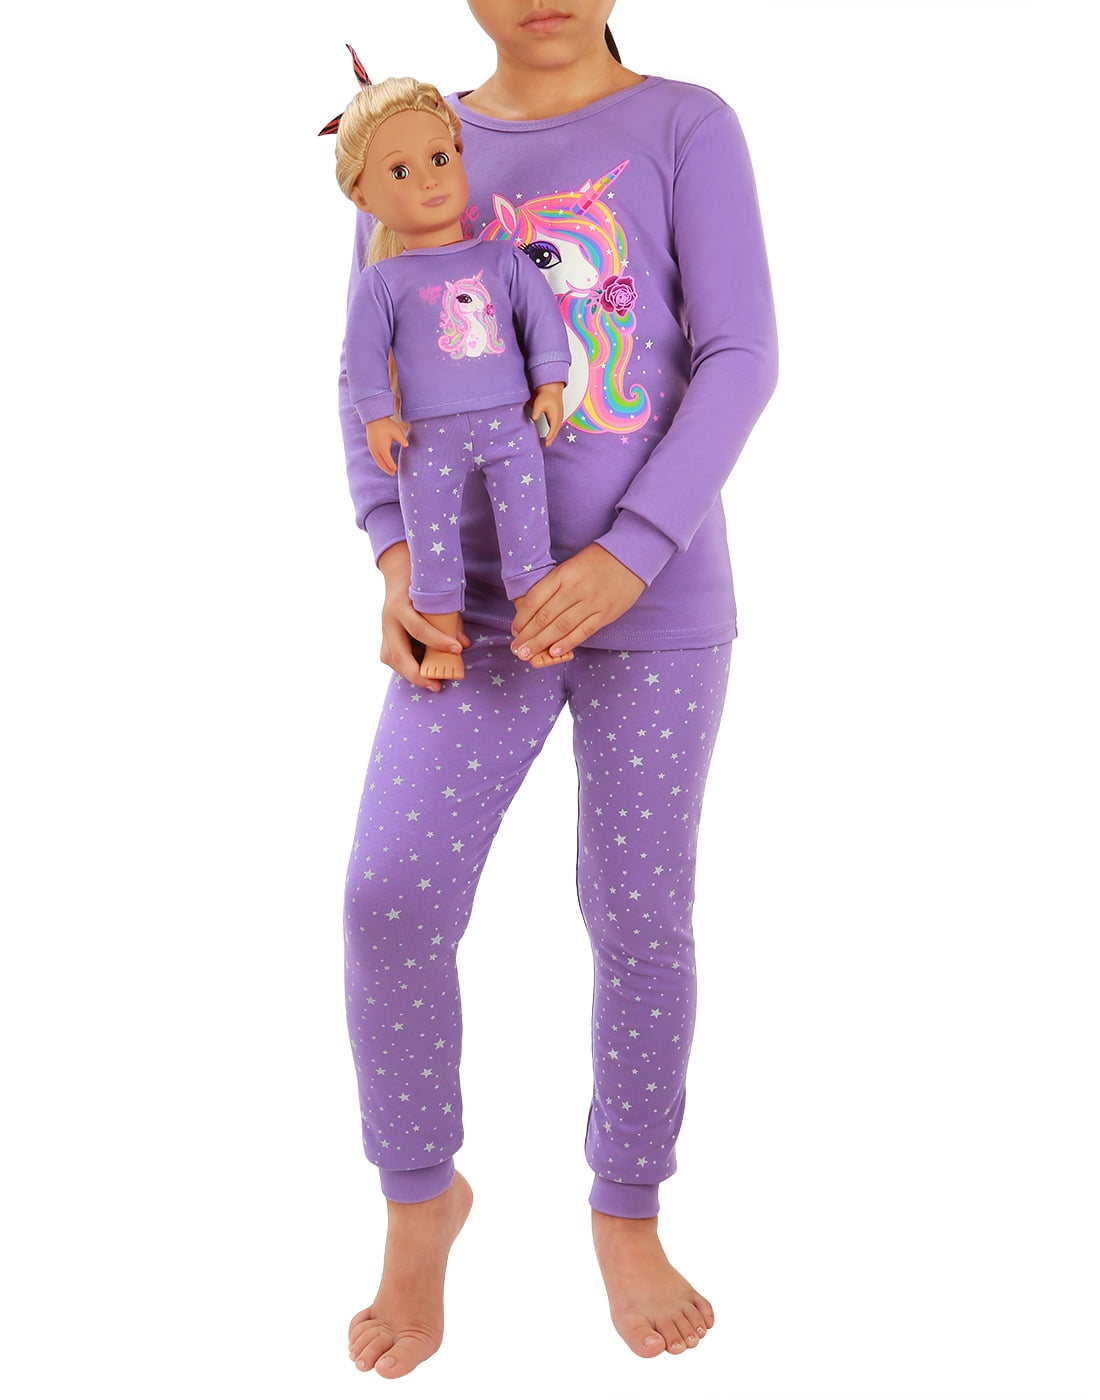 Babyroom Girls Matching Doll&Toddler 4 Piece Cotton Pajamas Toddler Unicorn Sleepwear 